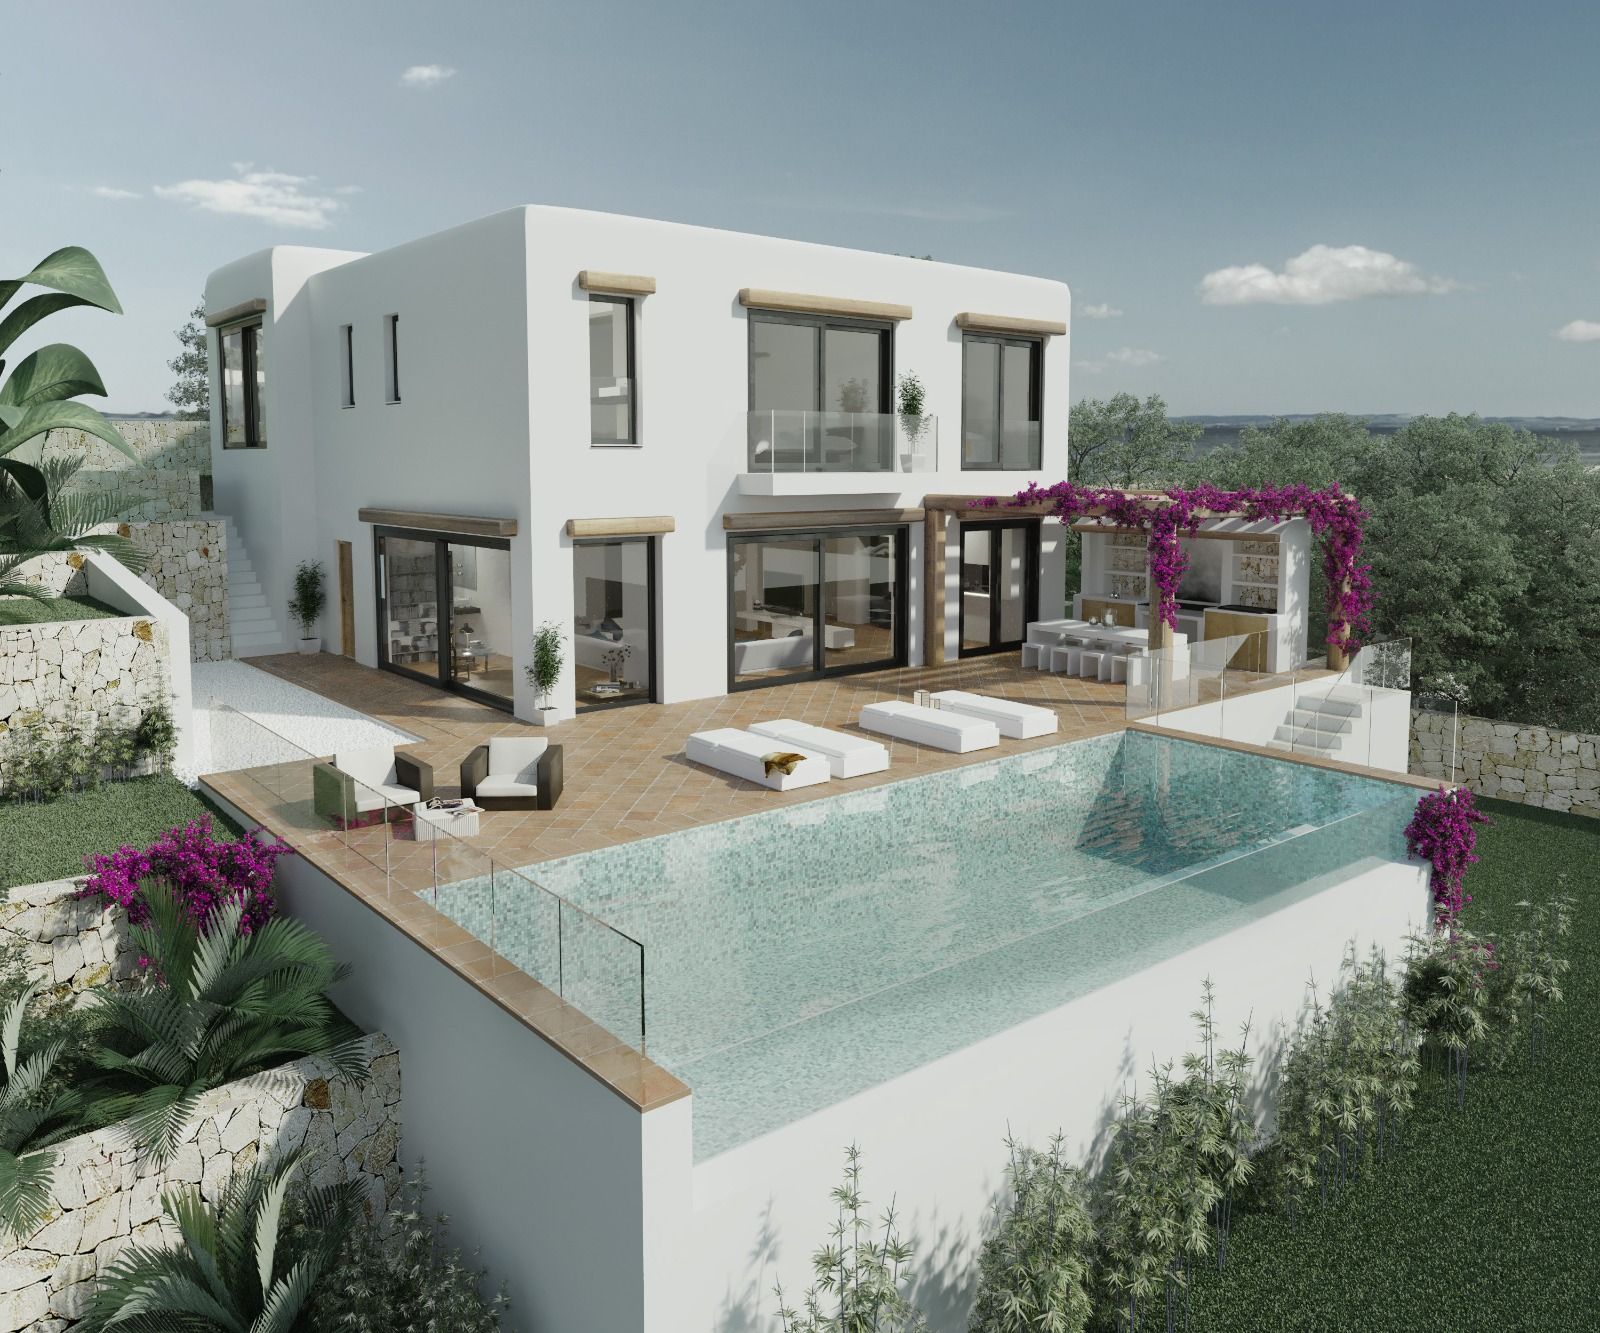 Villa moderna de estilo mediterráneo y vistas panorámicas al mar, Benissa